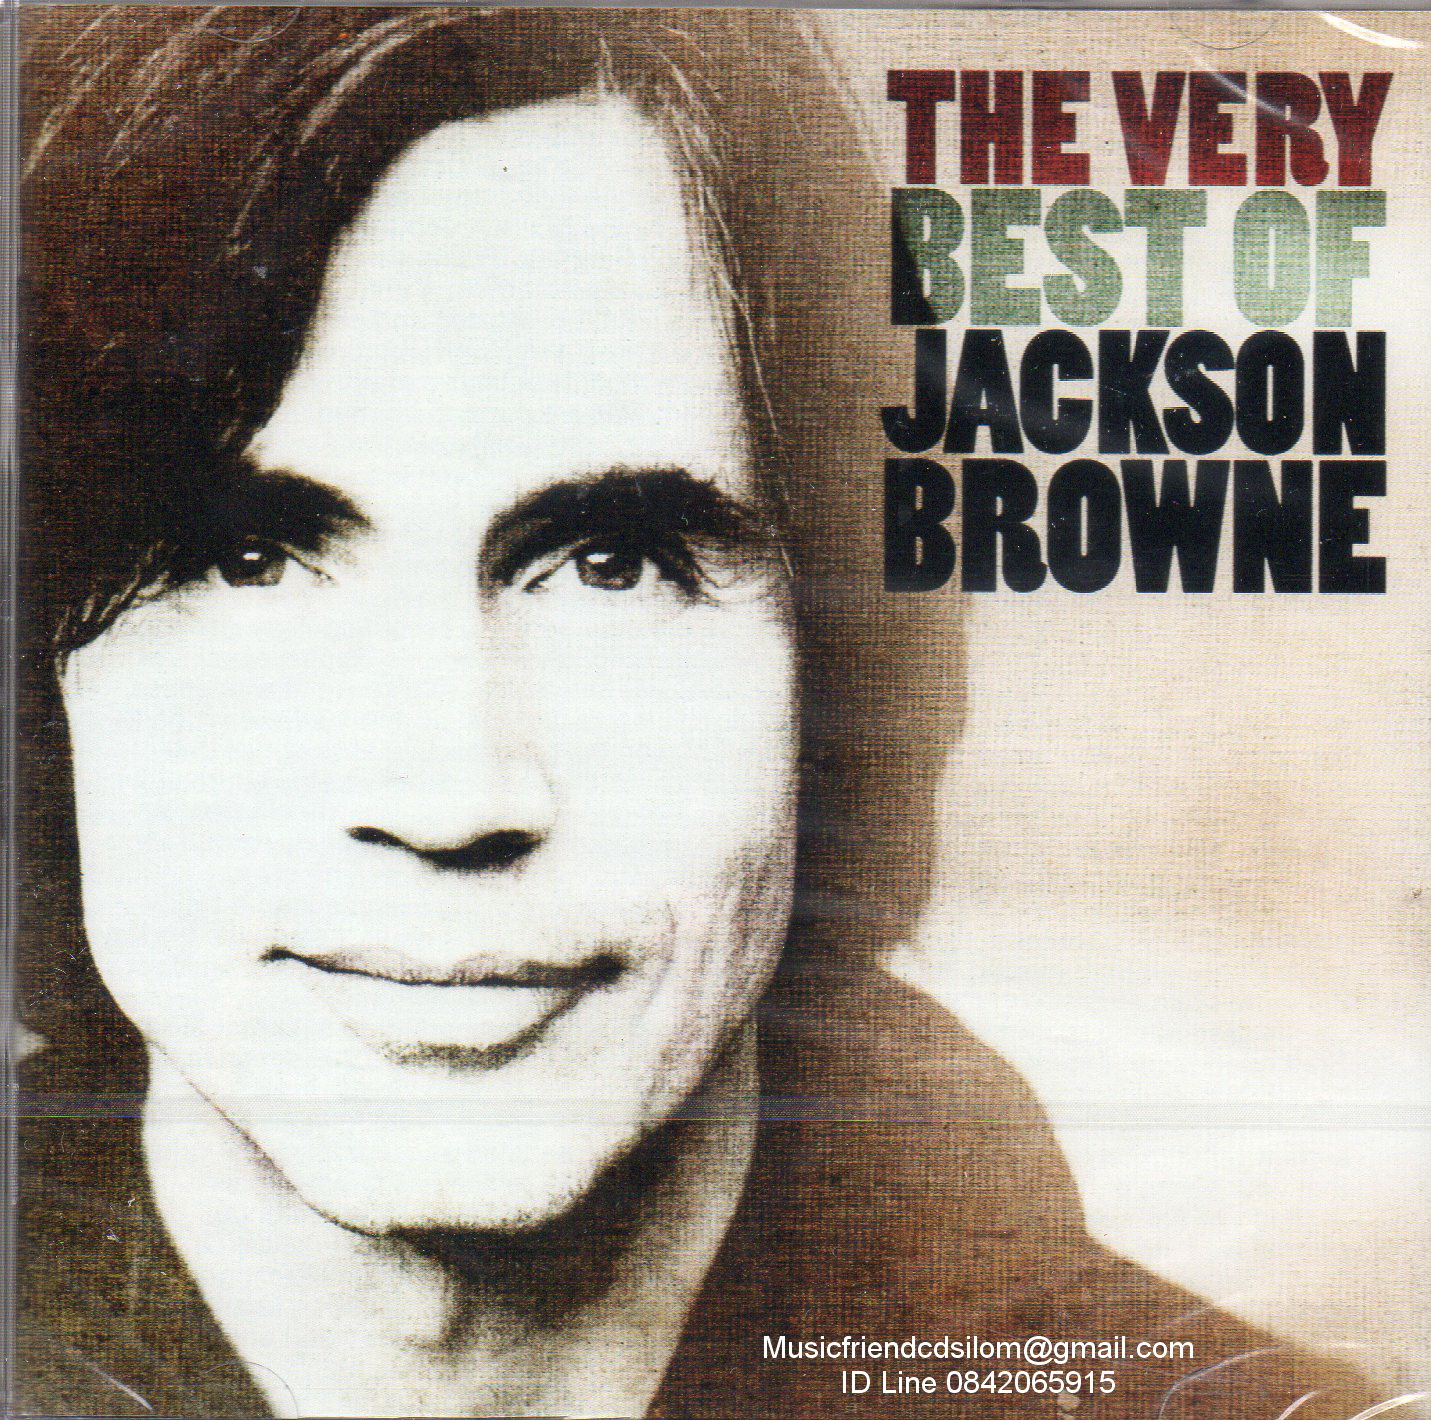 CD,Jackson Browne - The Very Best of Jackson Browne(Germany)